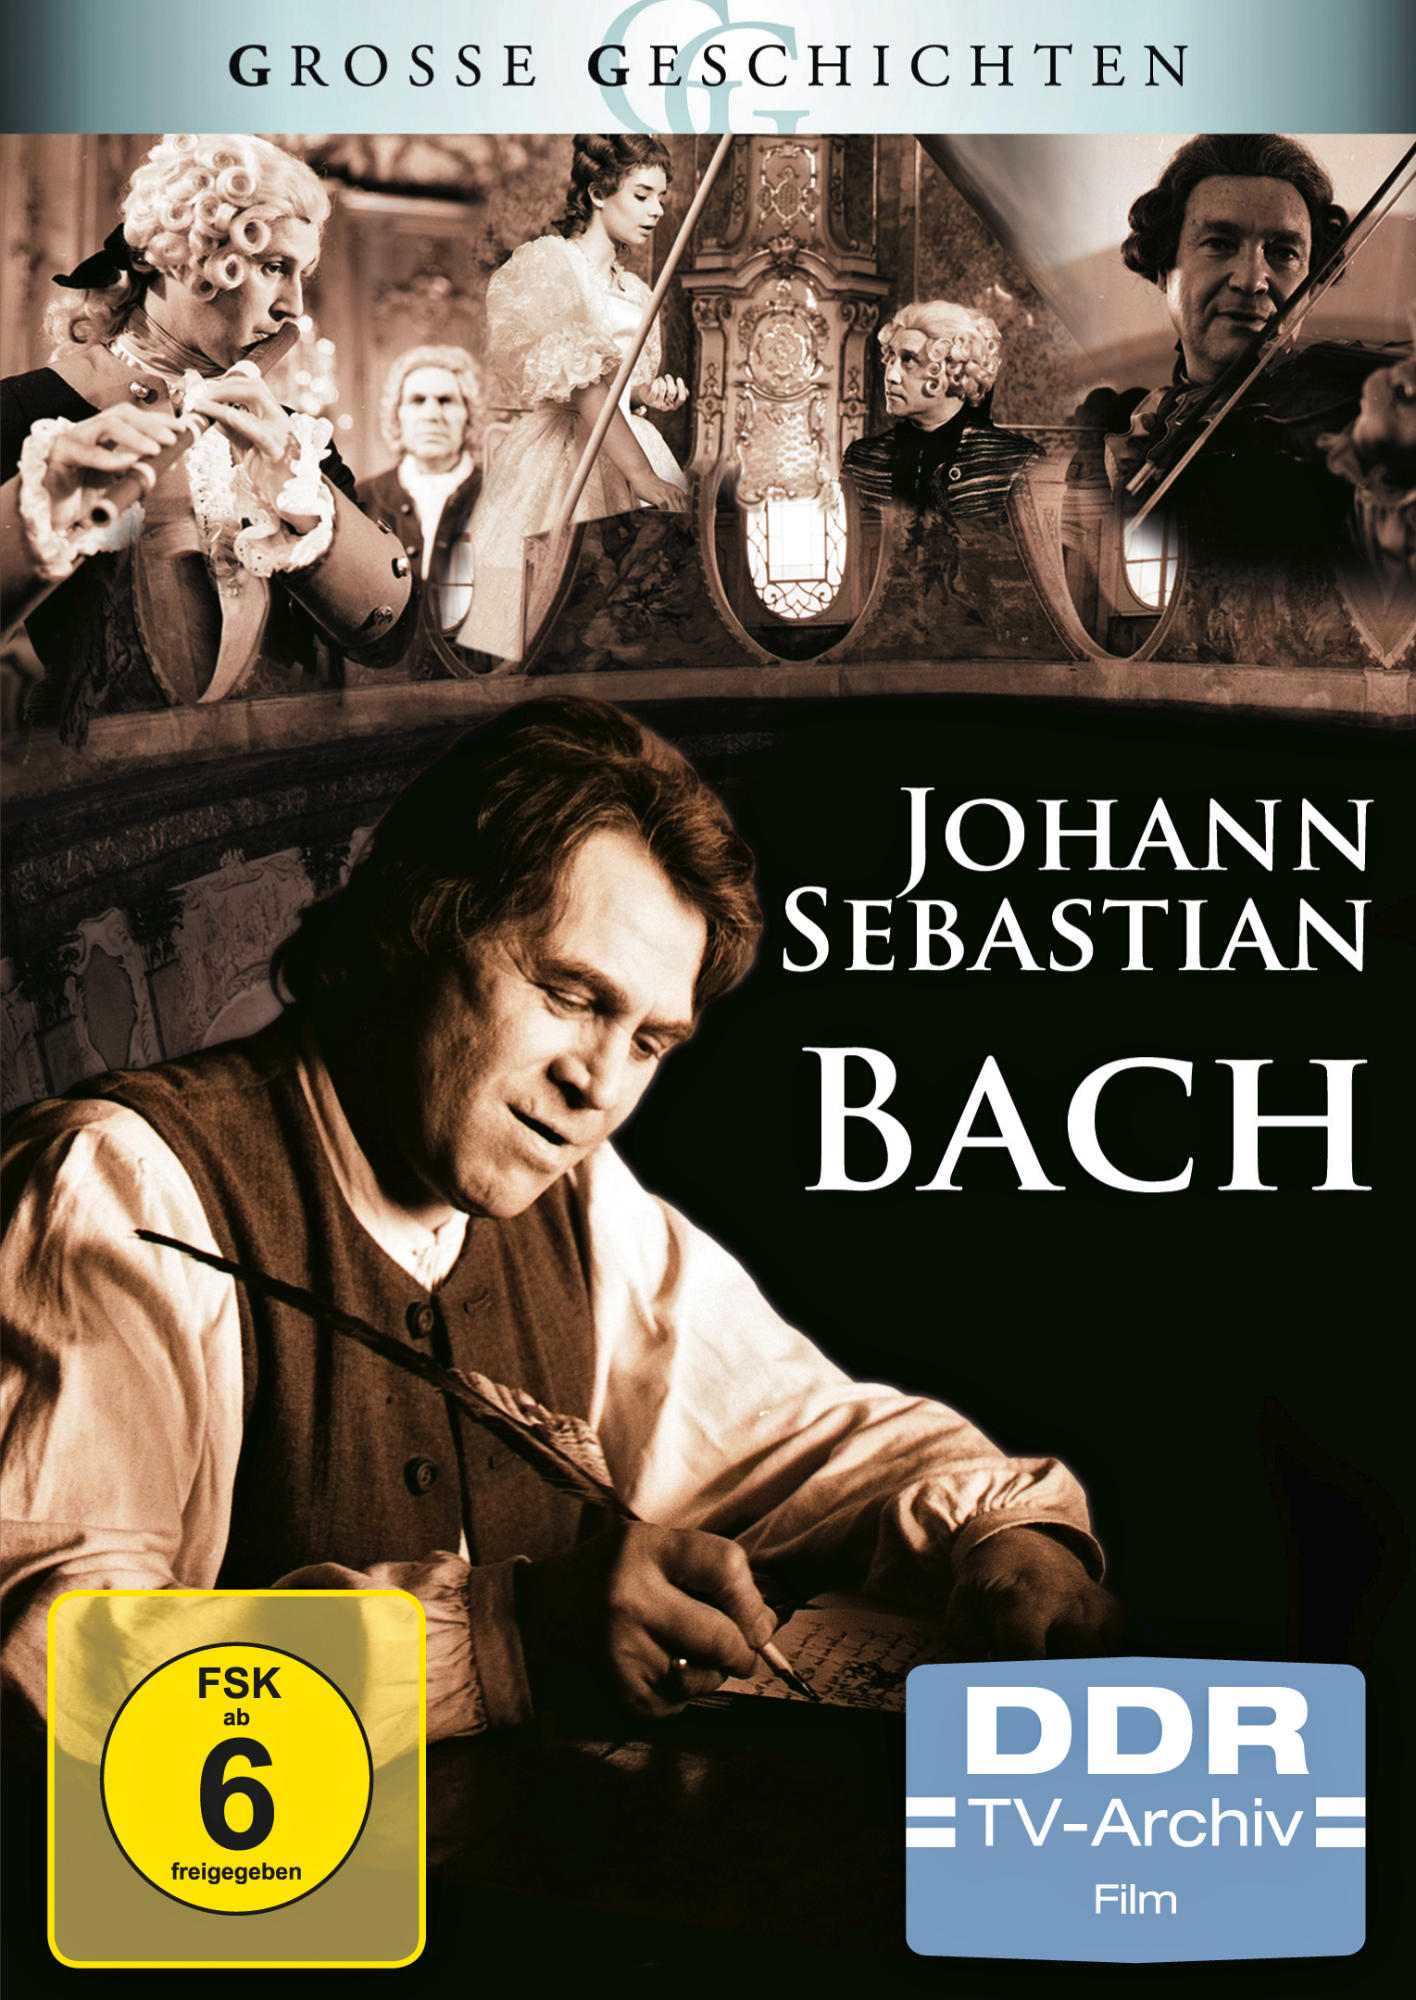 JOHANN SEBASTIAN DVD BACH GESCHICHTEN) (GROSSE